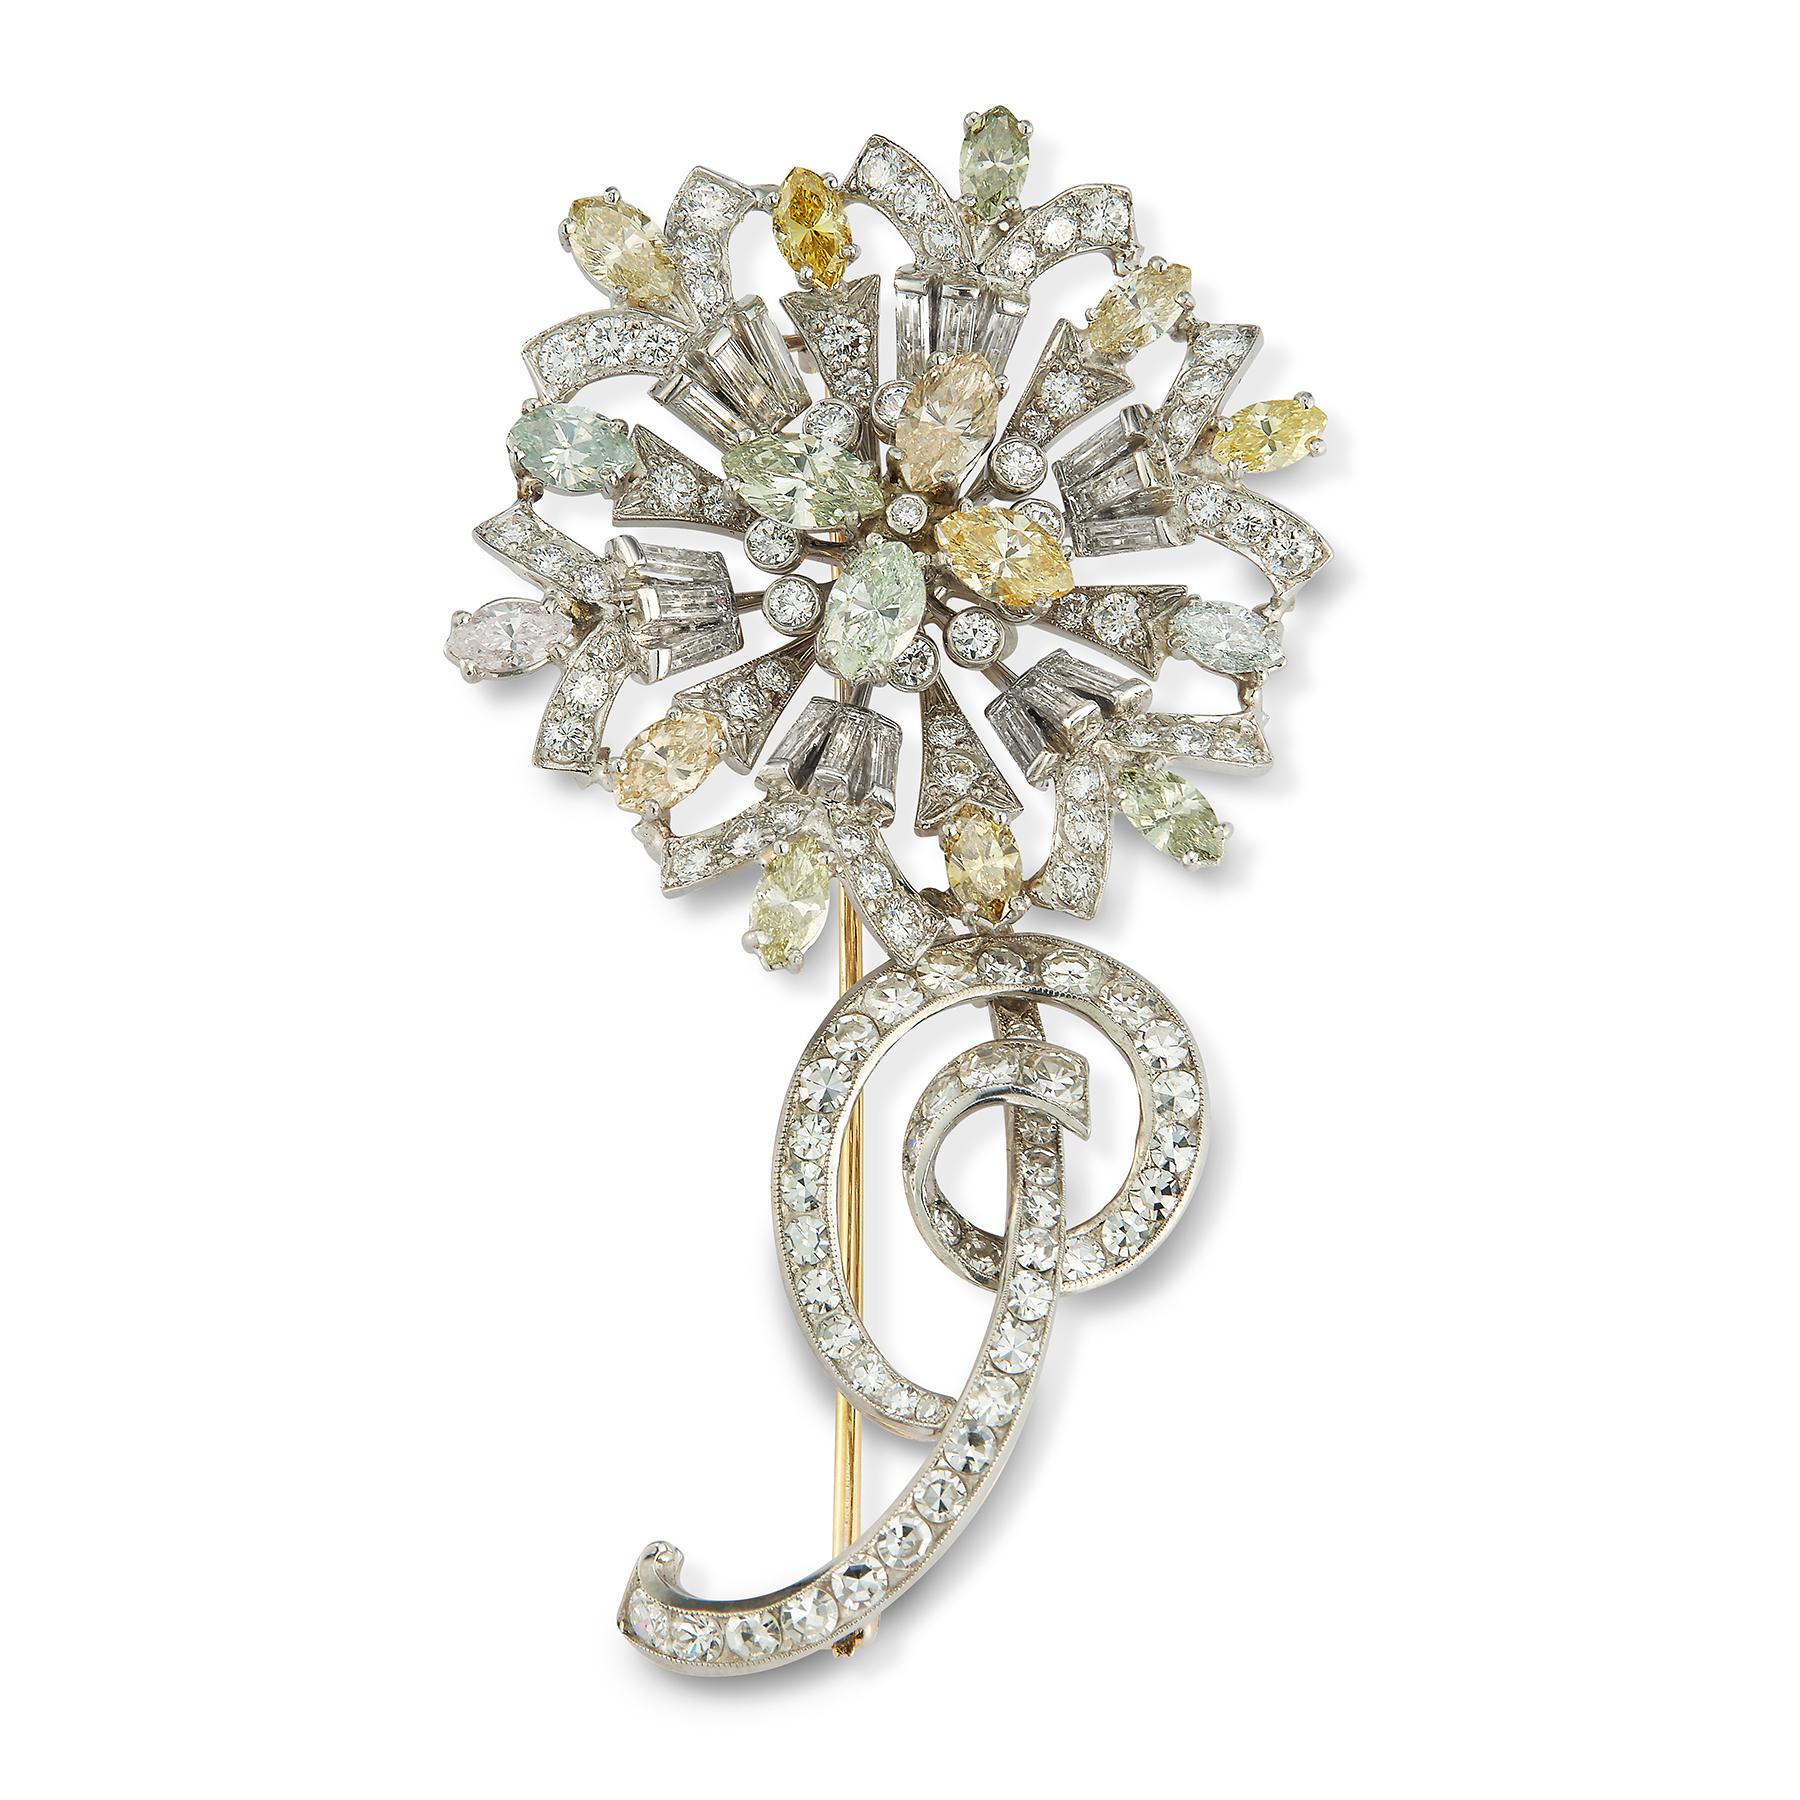 Tiffany & Co. Zertifizierte mehrfarbige Diamant-Blumenbrosche, CIRCA 1940, besetzt mit farbigen Diamanten in den Farben rosa, grün, blau, grau, gelb, braun und orange. Diamanten im Marquise-Brillantschliff, insgesamt ca. 4,95 ct. Runder